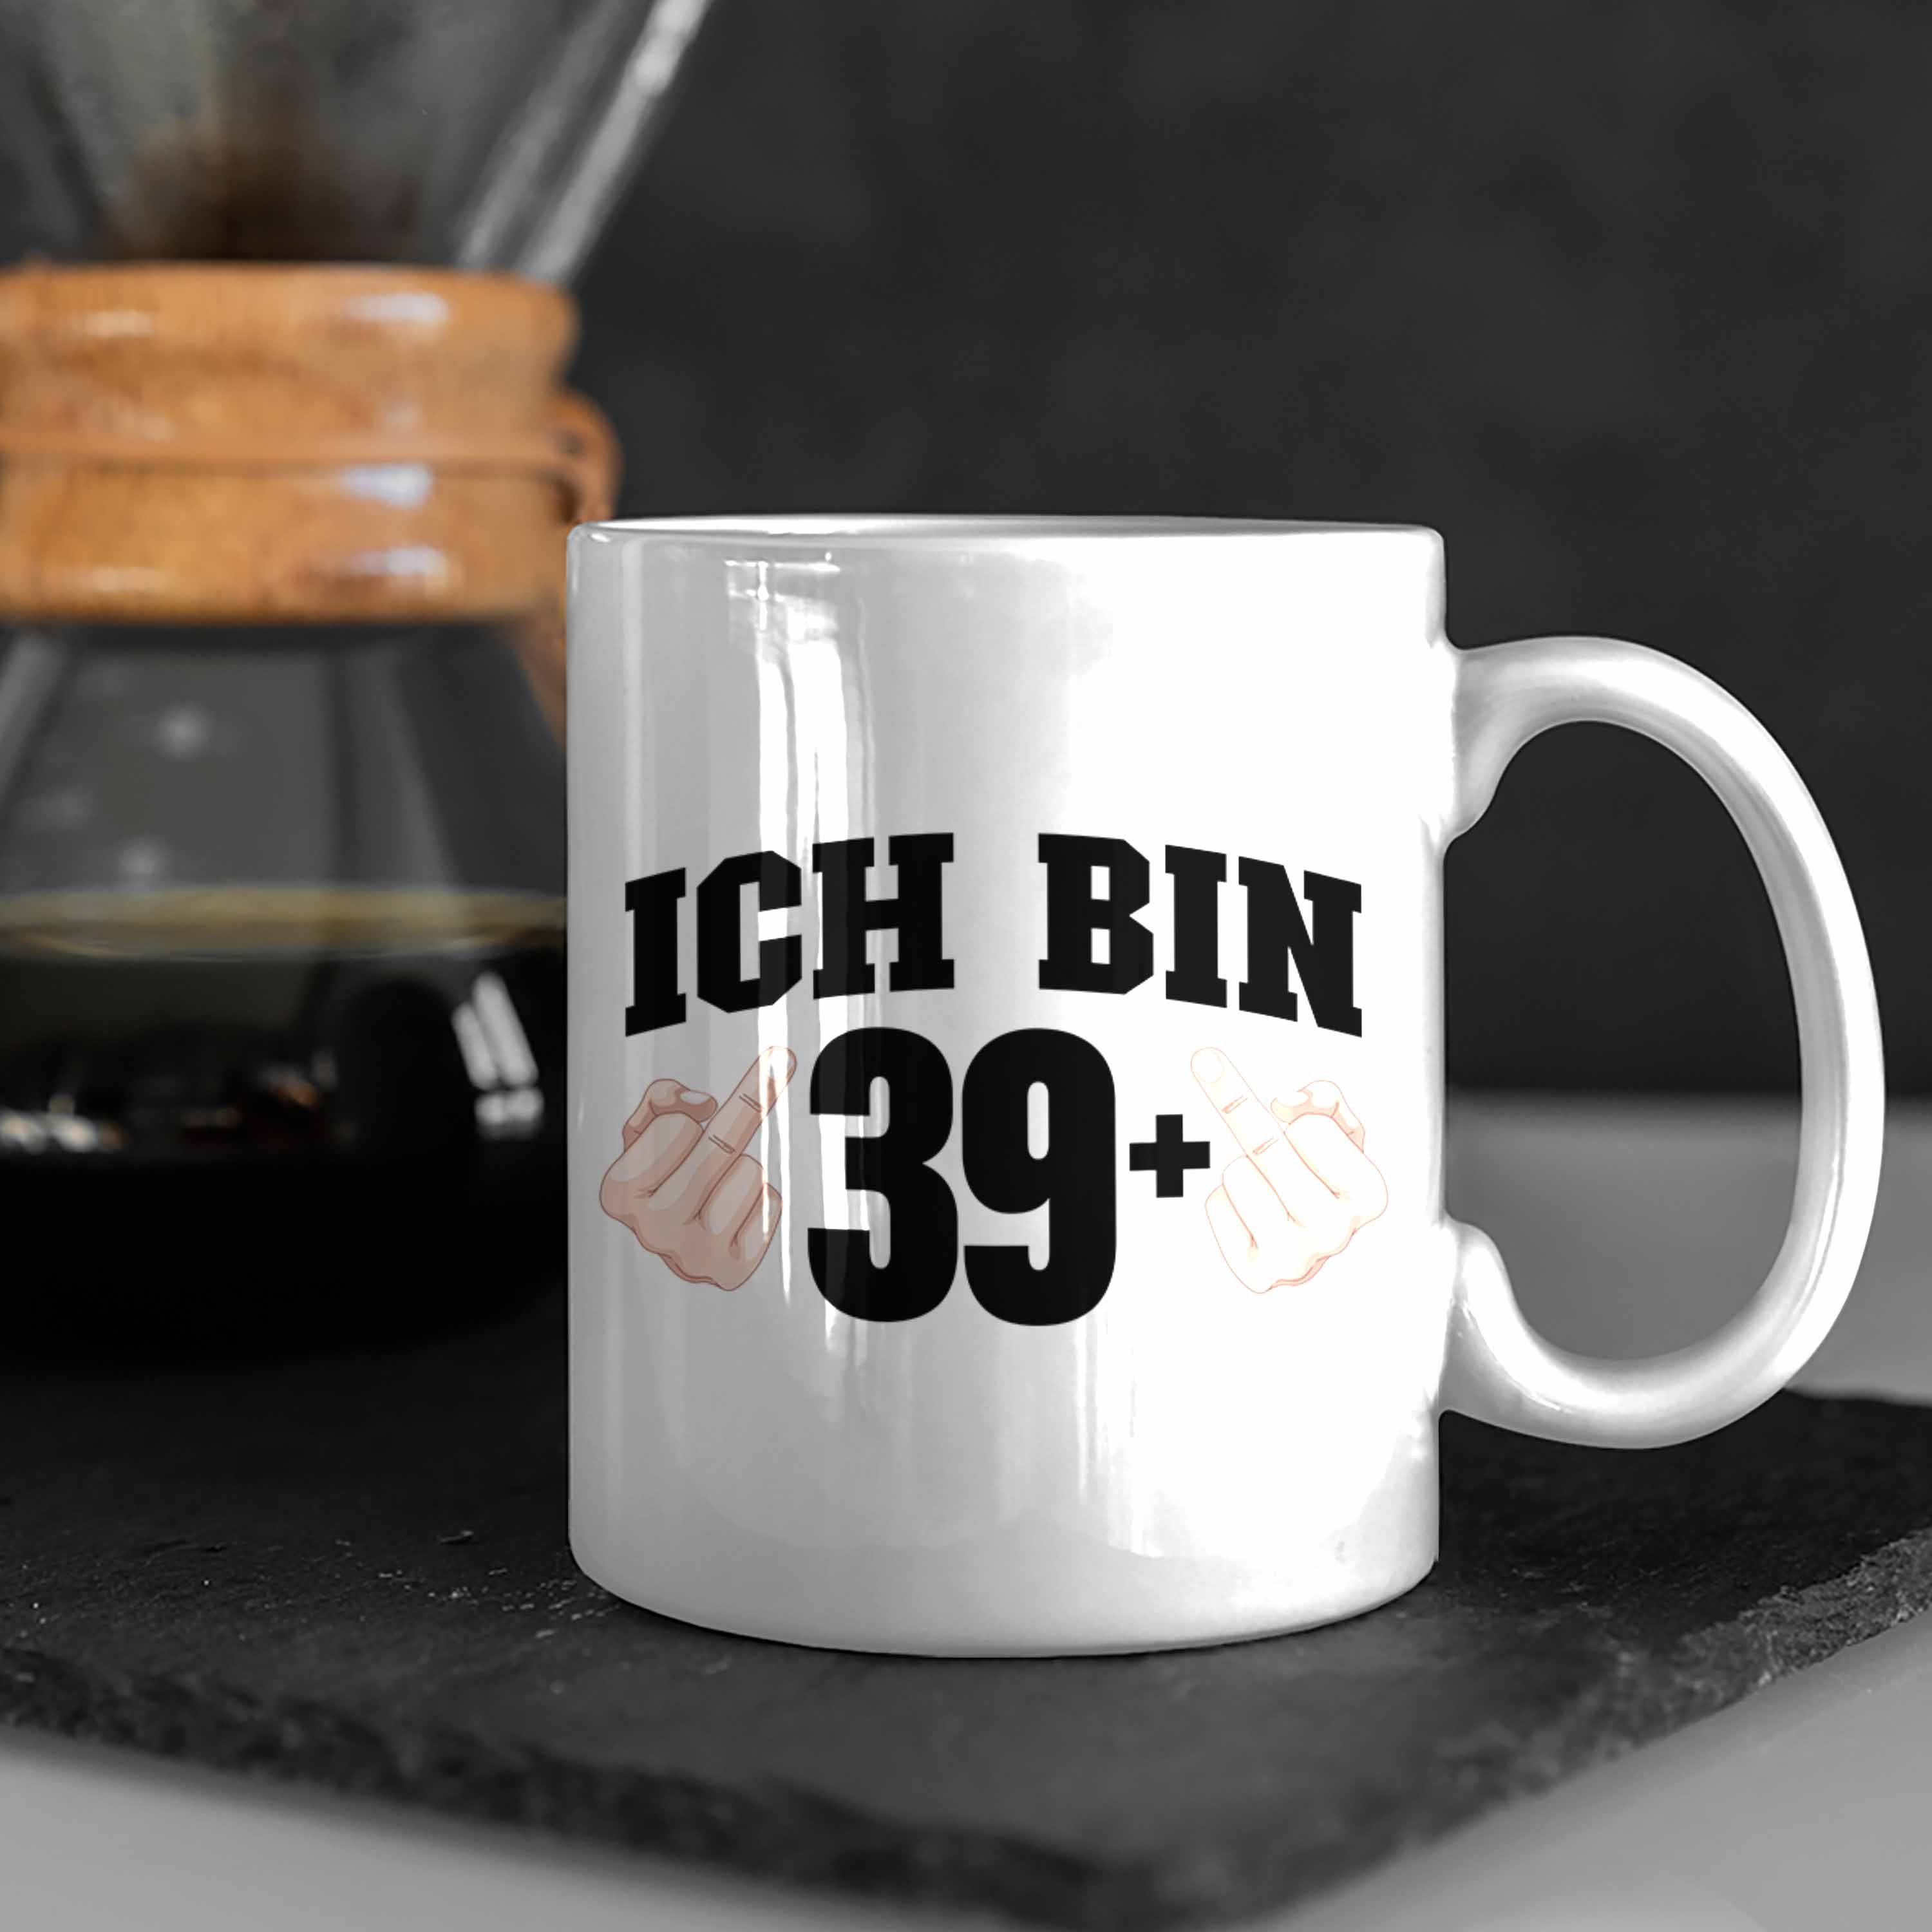 Vater Geburtstag Geschenk 39+ Frau Mittelfinger - Geschenke Weiss Ich Bin Trendation Lustiger Spruch 40. Trendation Mann Tasse Mutter Tasse